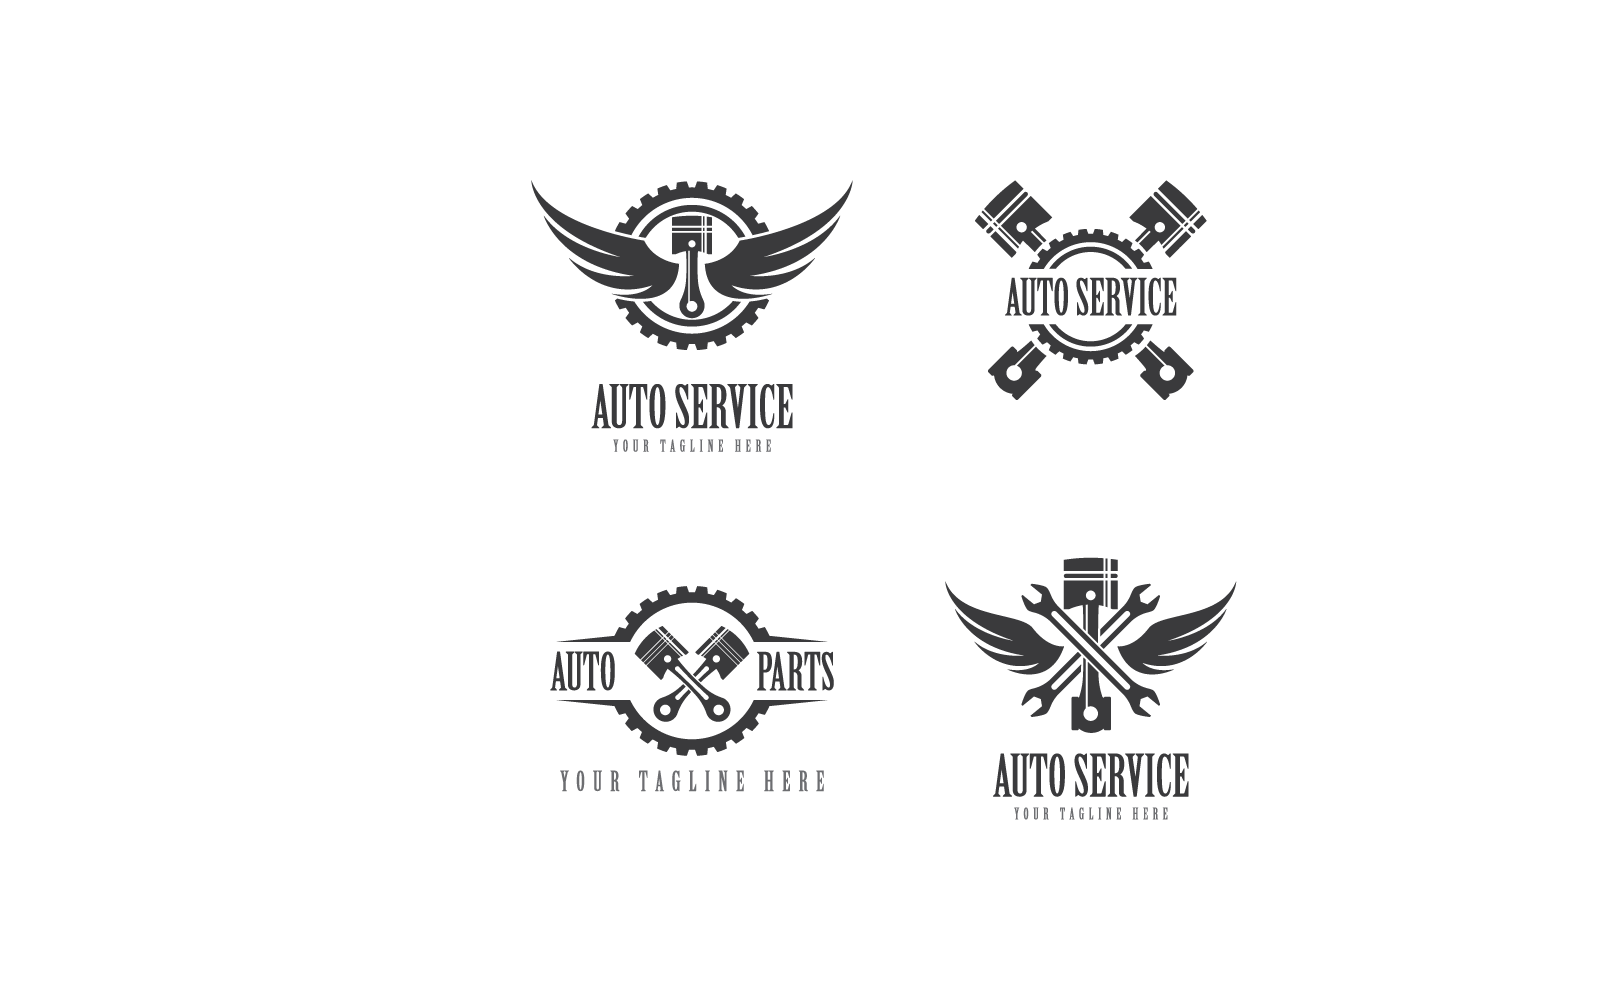 Piston auto service logo vector icon flat design